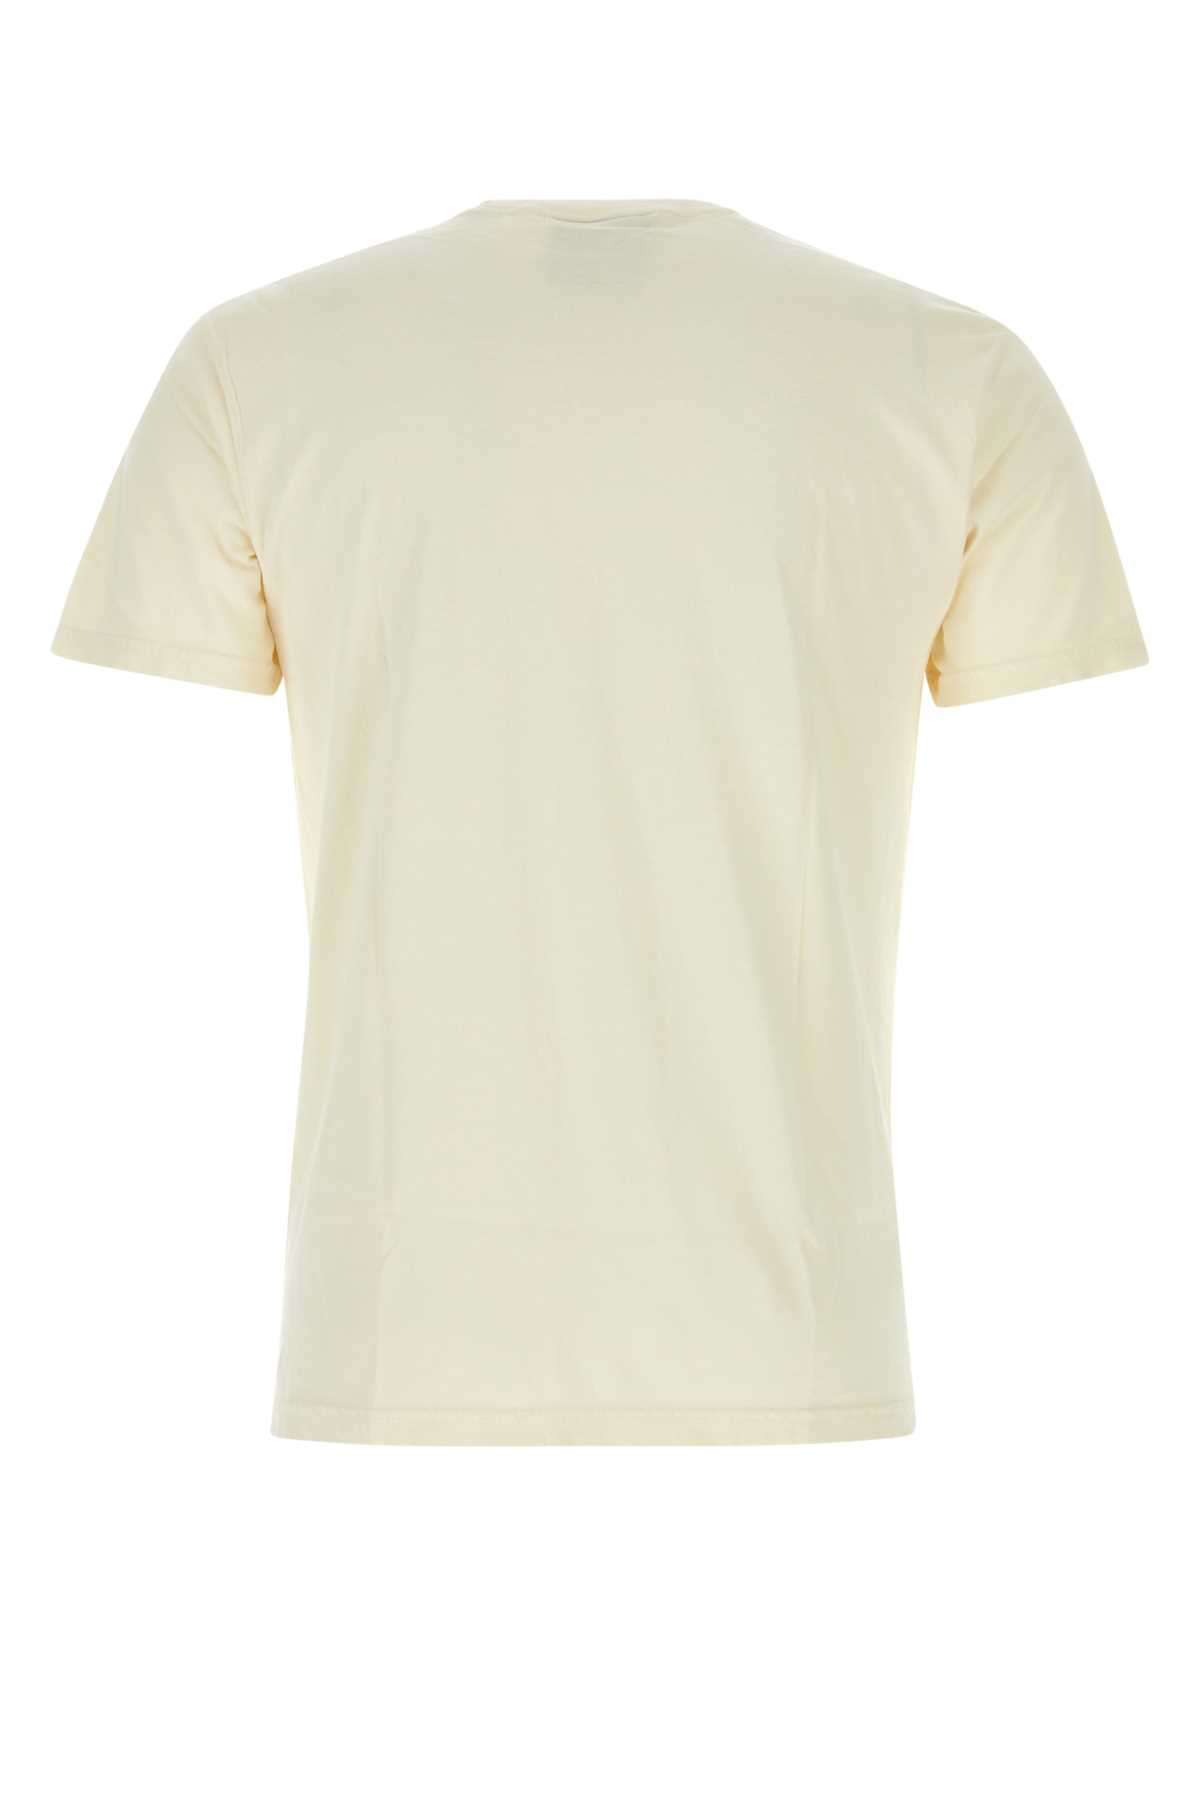 Shop Kidsuper Cream Cotton T-shirt